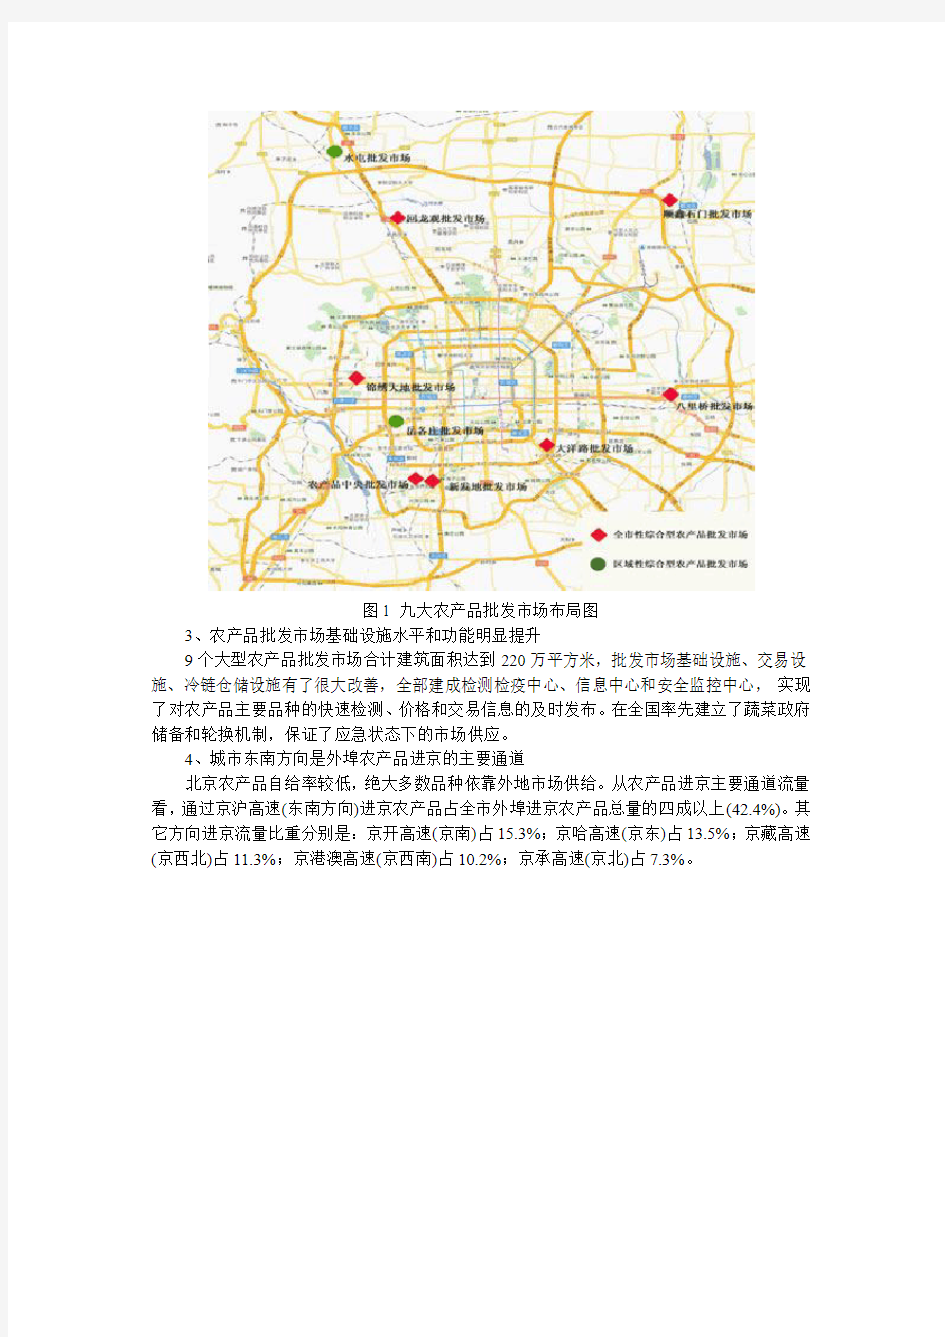 北京市“十二五”时期农产品流通体系发展规划